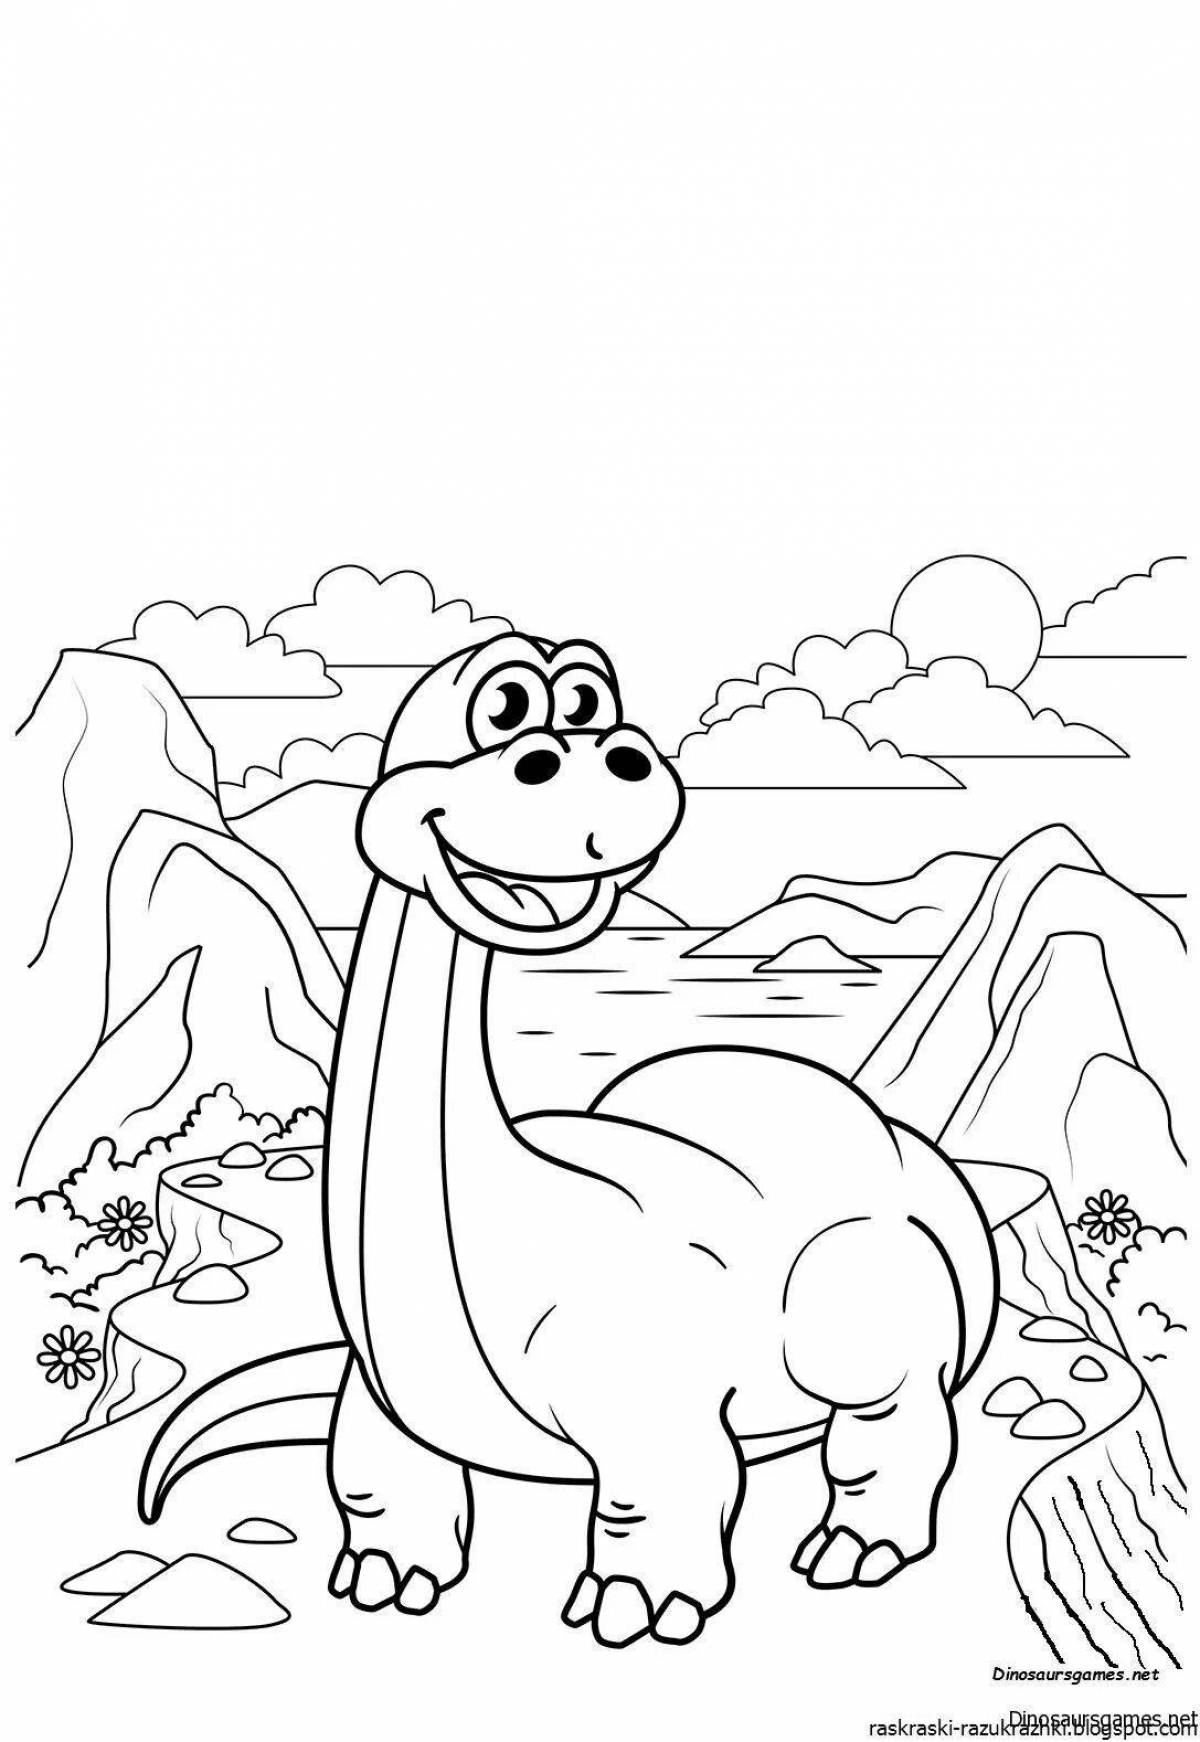 Printable dinosaurs for kids #6